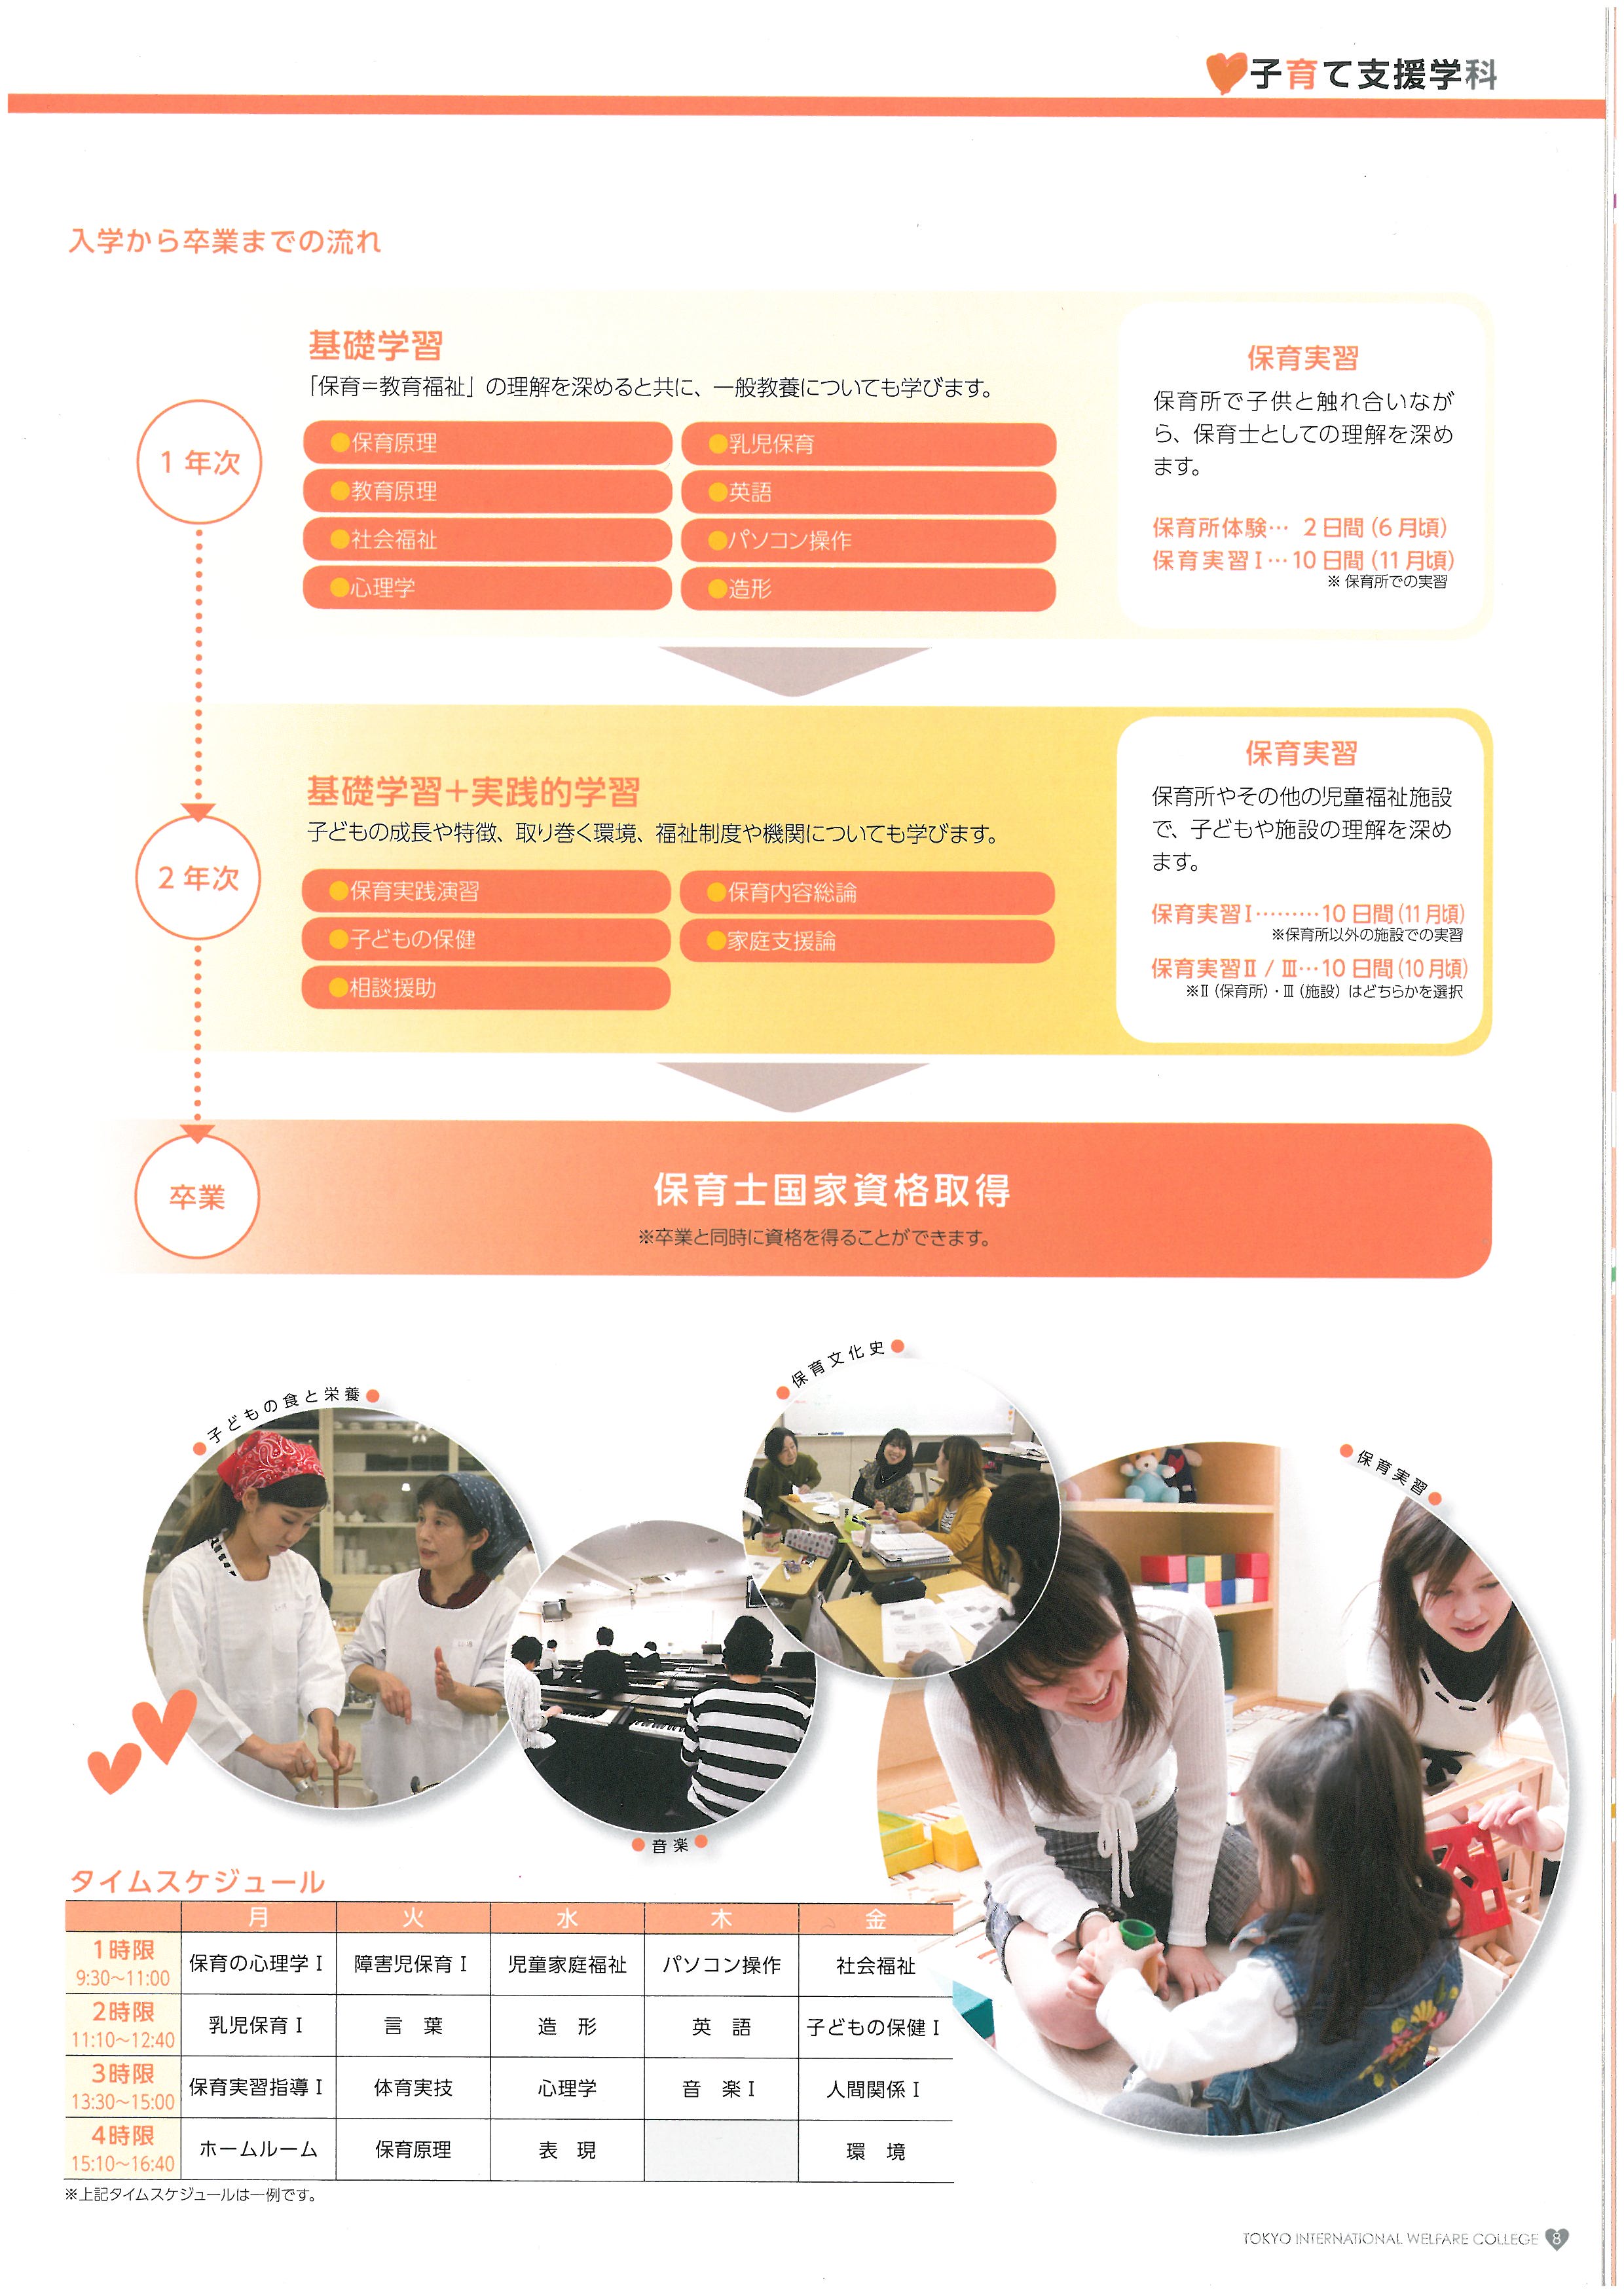 도쿄 국제복지전문학교 홍보 팜플렛 09.jpg